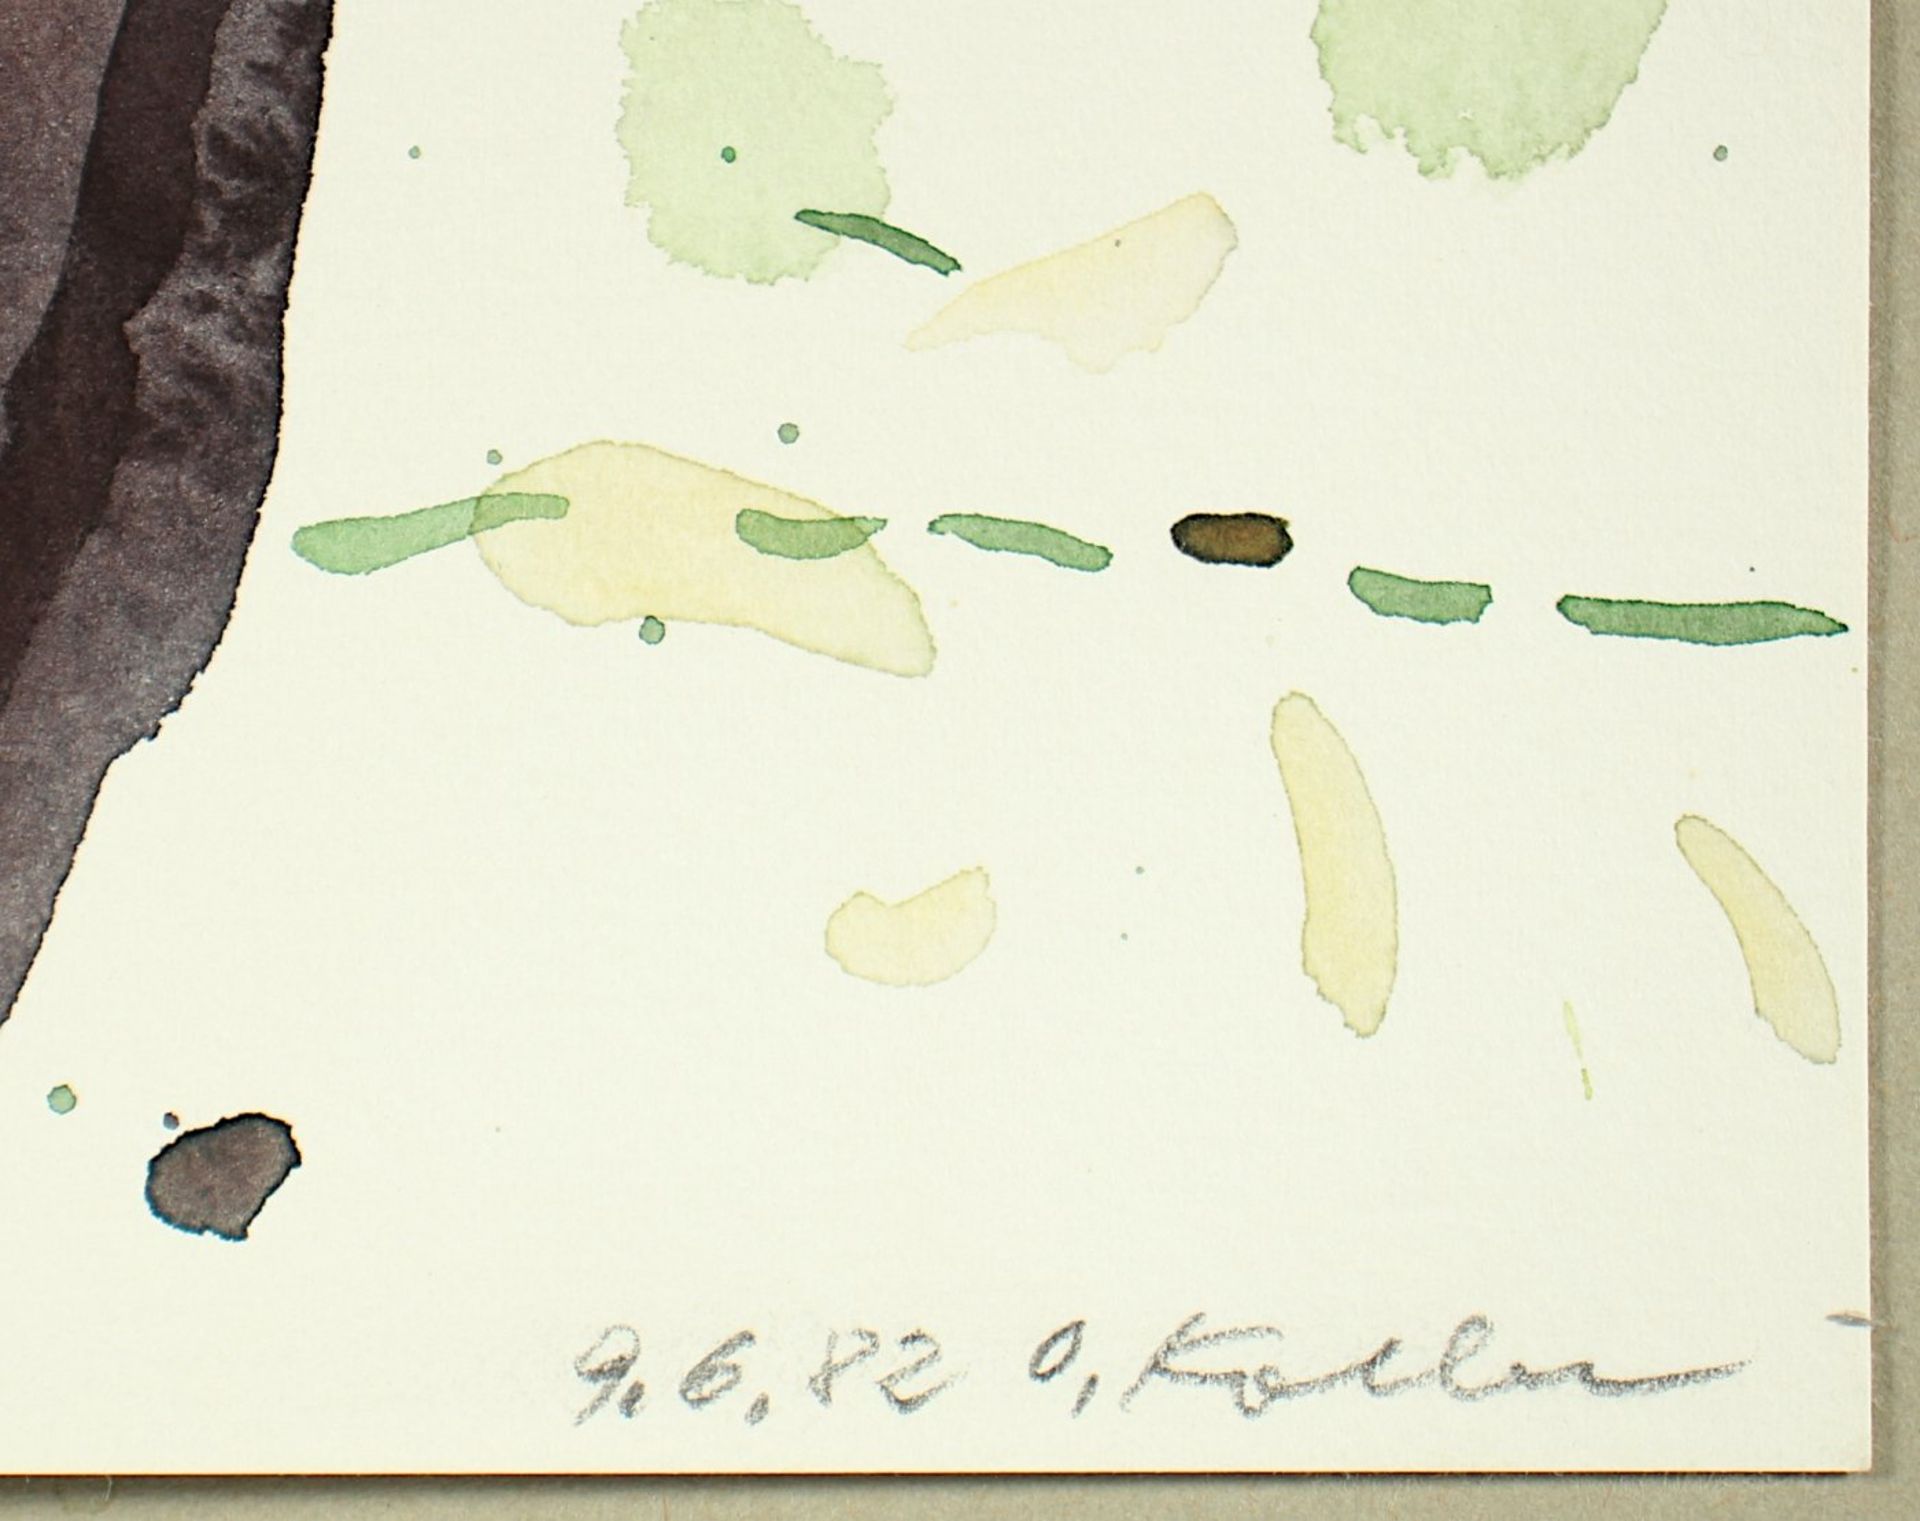 KOLLER, Oskar, "Blumentopf", Aquarell/Papier, 38 x 27,5, handsigniert und datiert '82, ungerahmt - Image 3 of 3